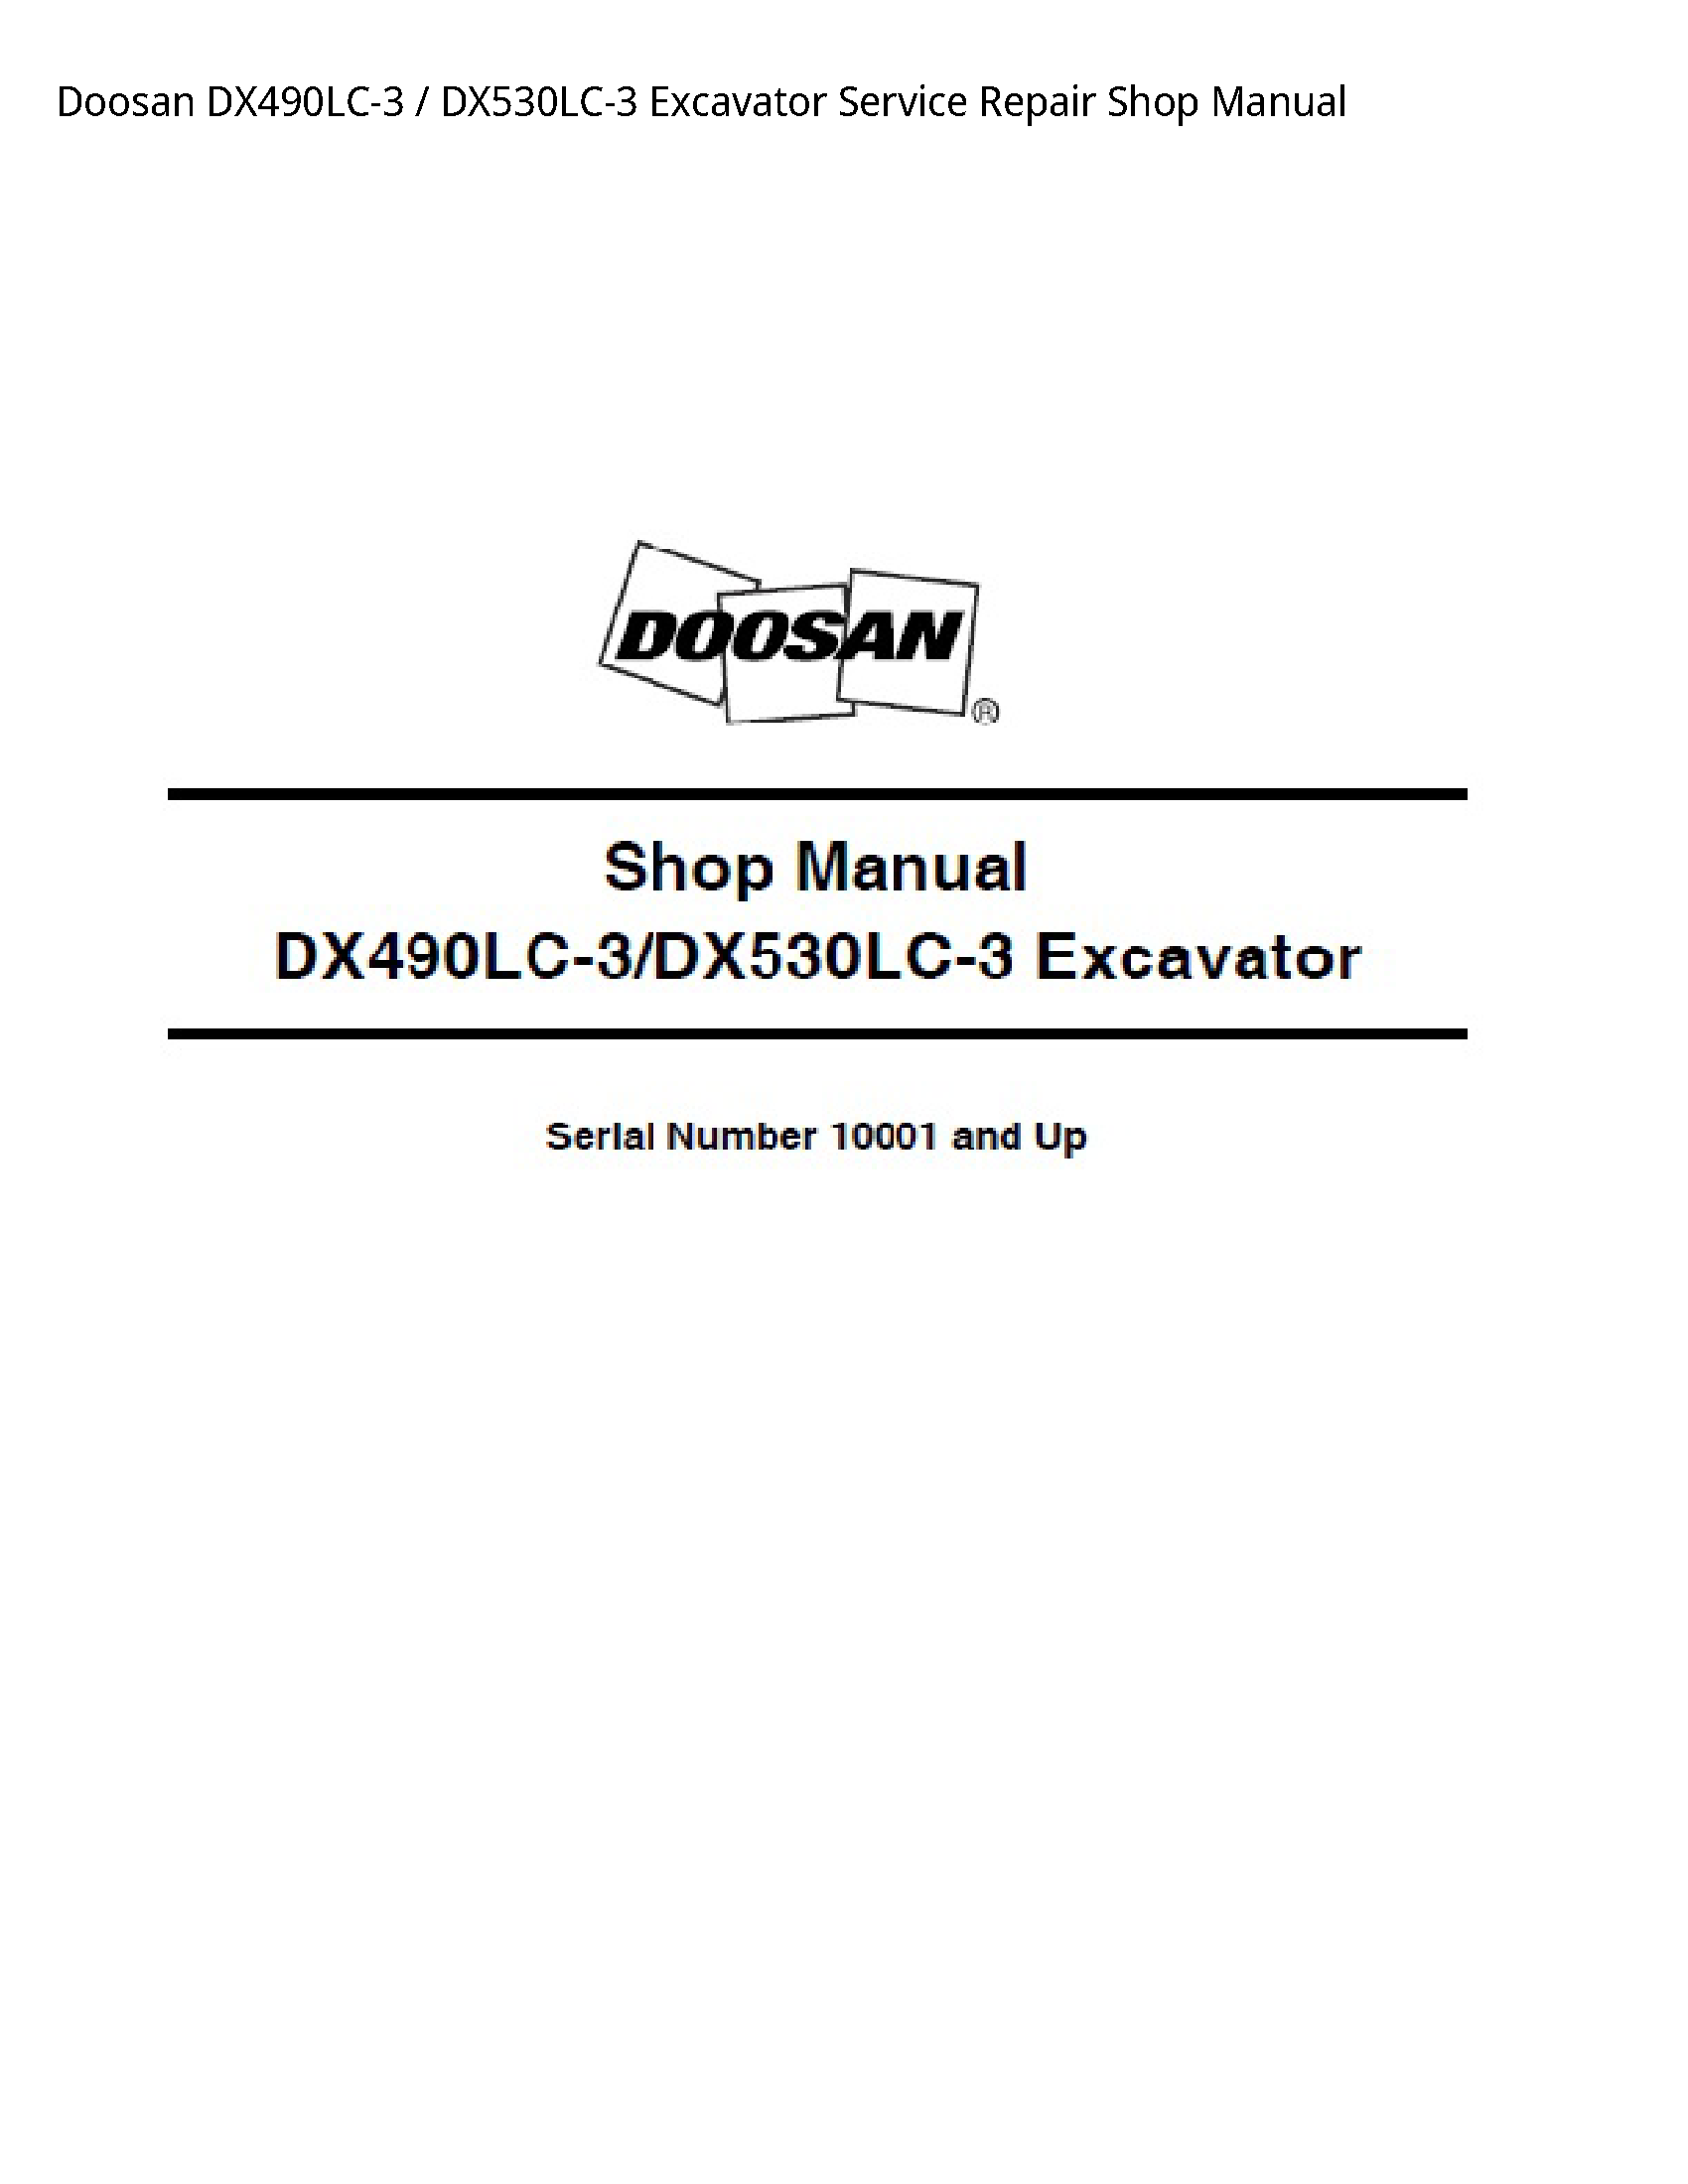 Doosan DX490LC-3 Excavator manual